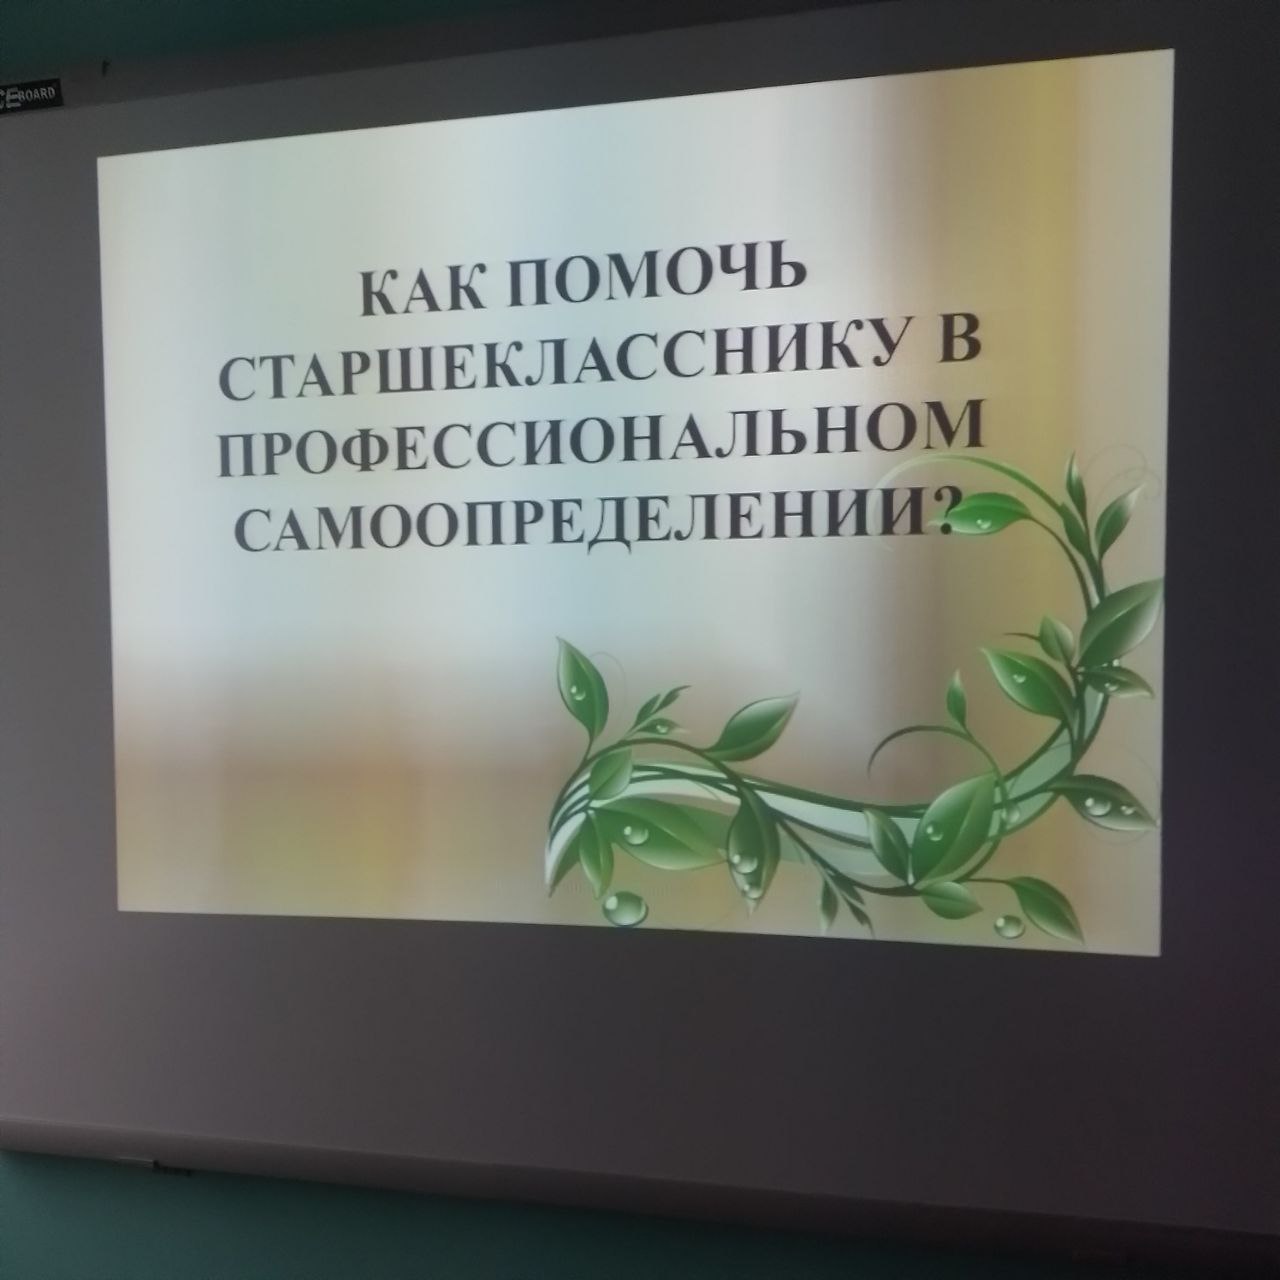 Материалы занятий © Антопольская средняя школа